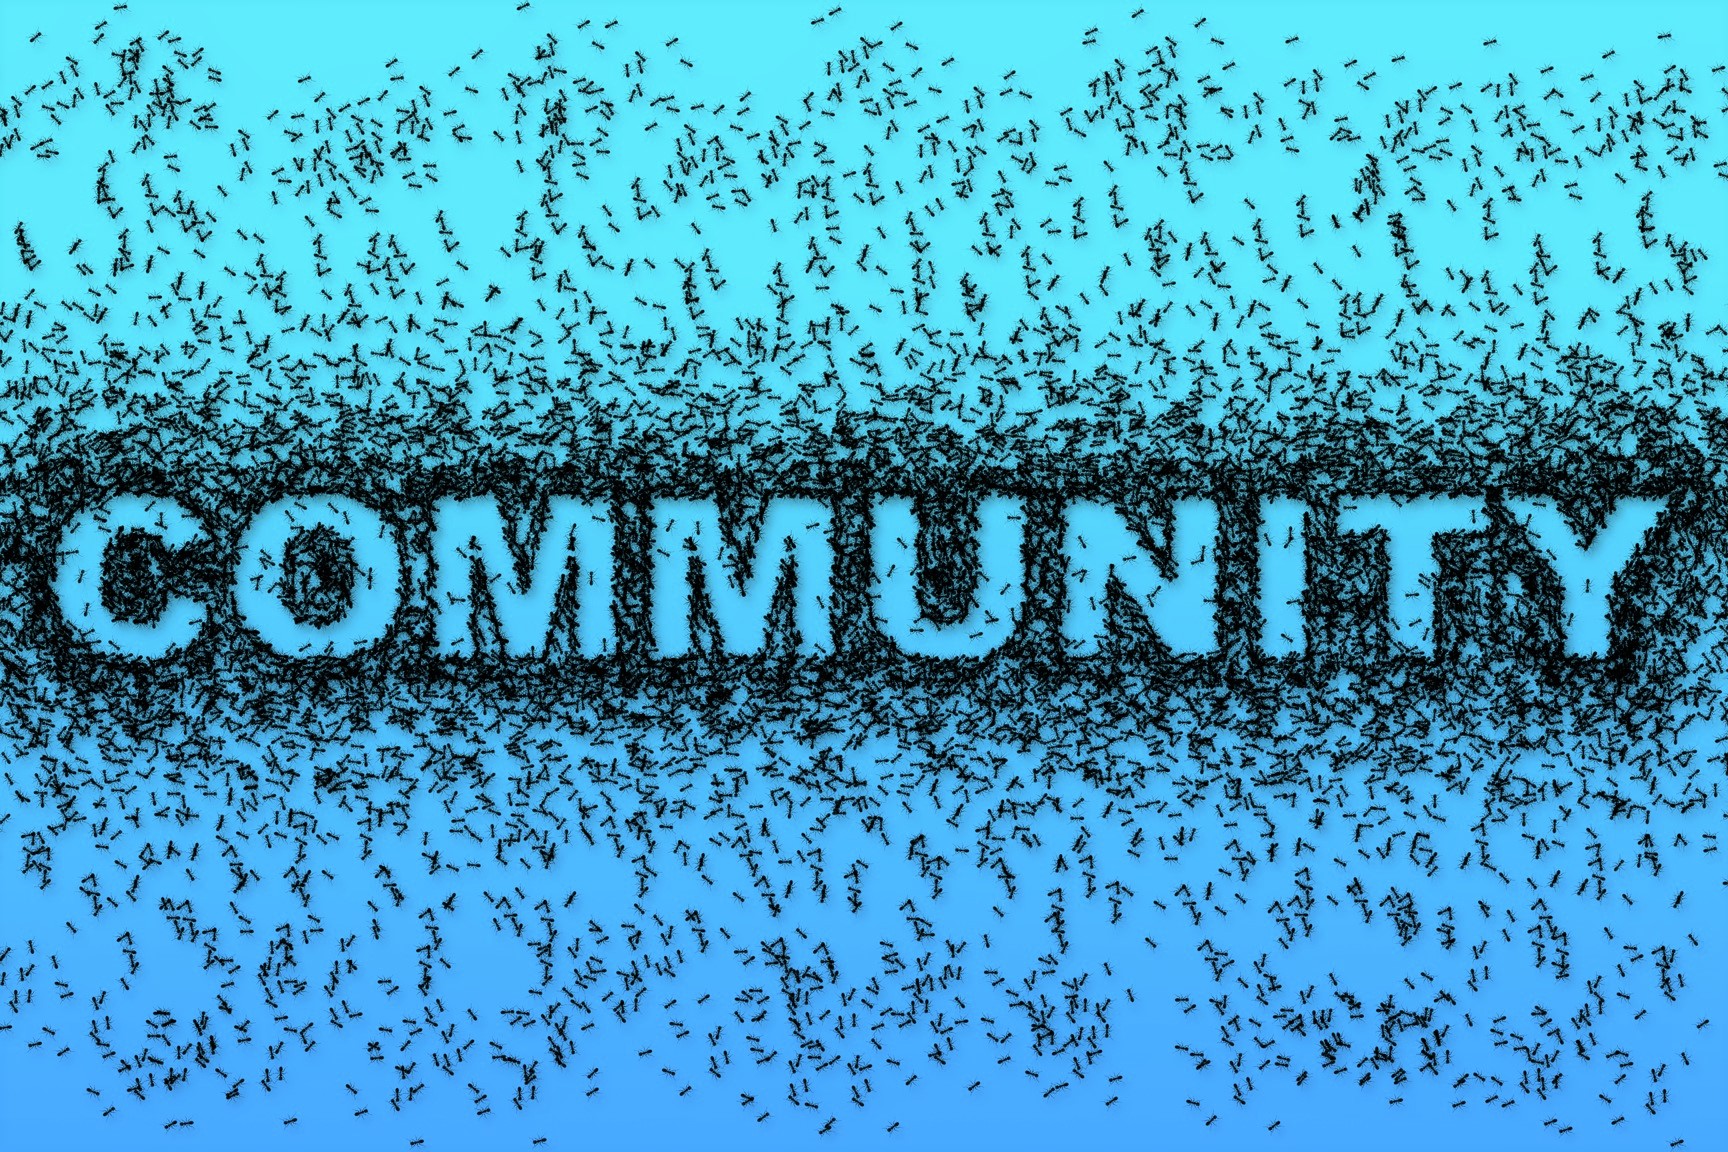 come creare una community; community online; L'Eco della Stampa; marketing strategico